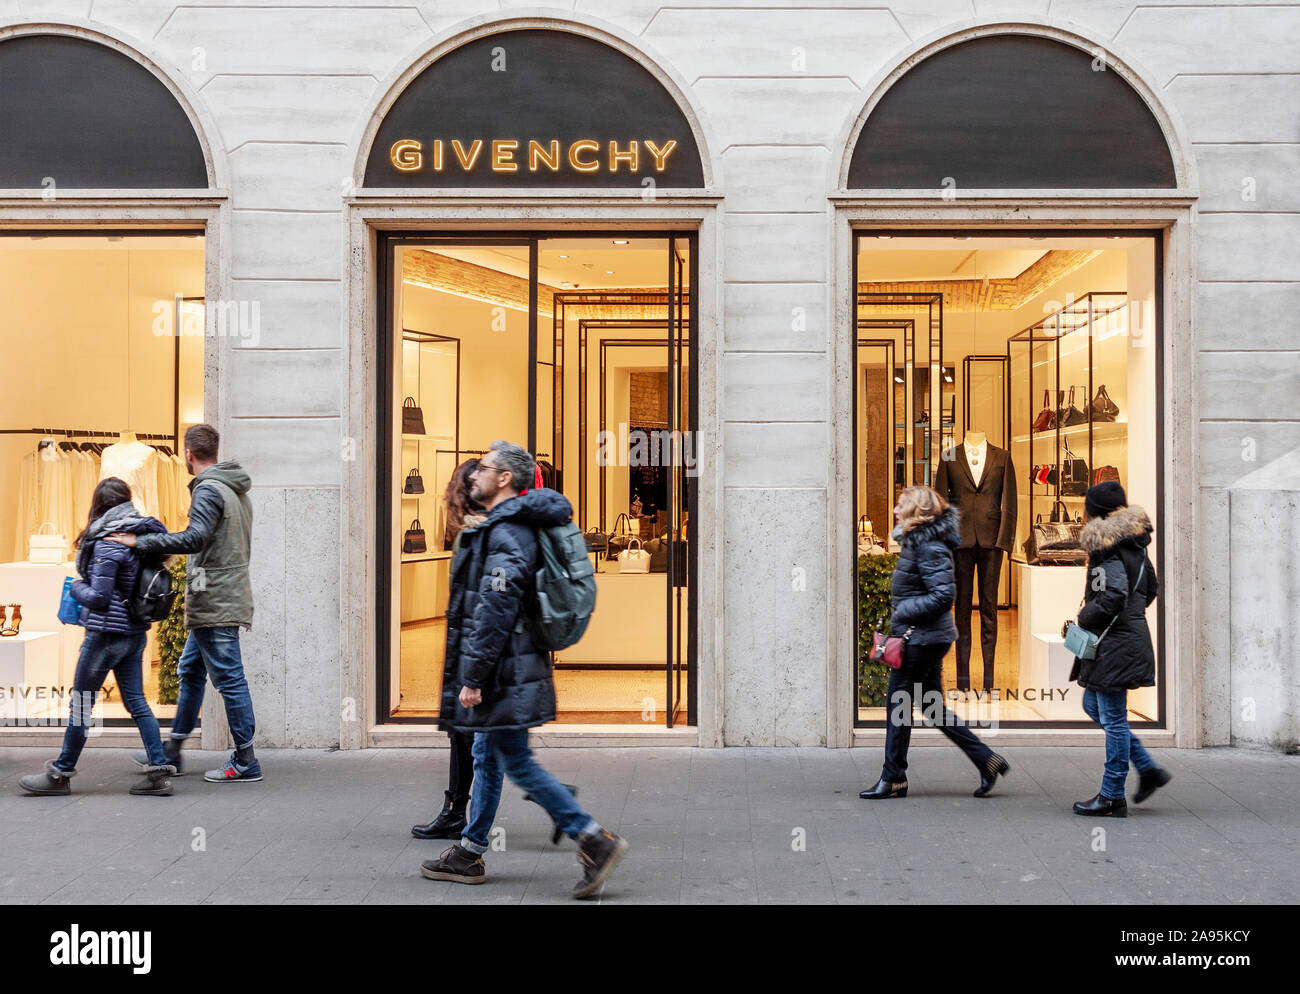 Roma, Italia - 08 dicembre, 2017: Street View di Givenchy di lusso casa di moda ingresso del negozio e la finestra di visualizzazione con la marca di digital signage e passaggio di persone Foto Stock